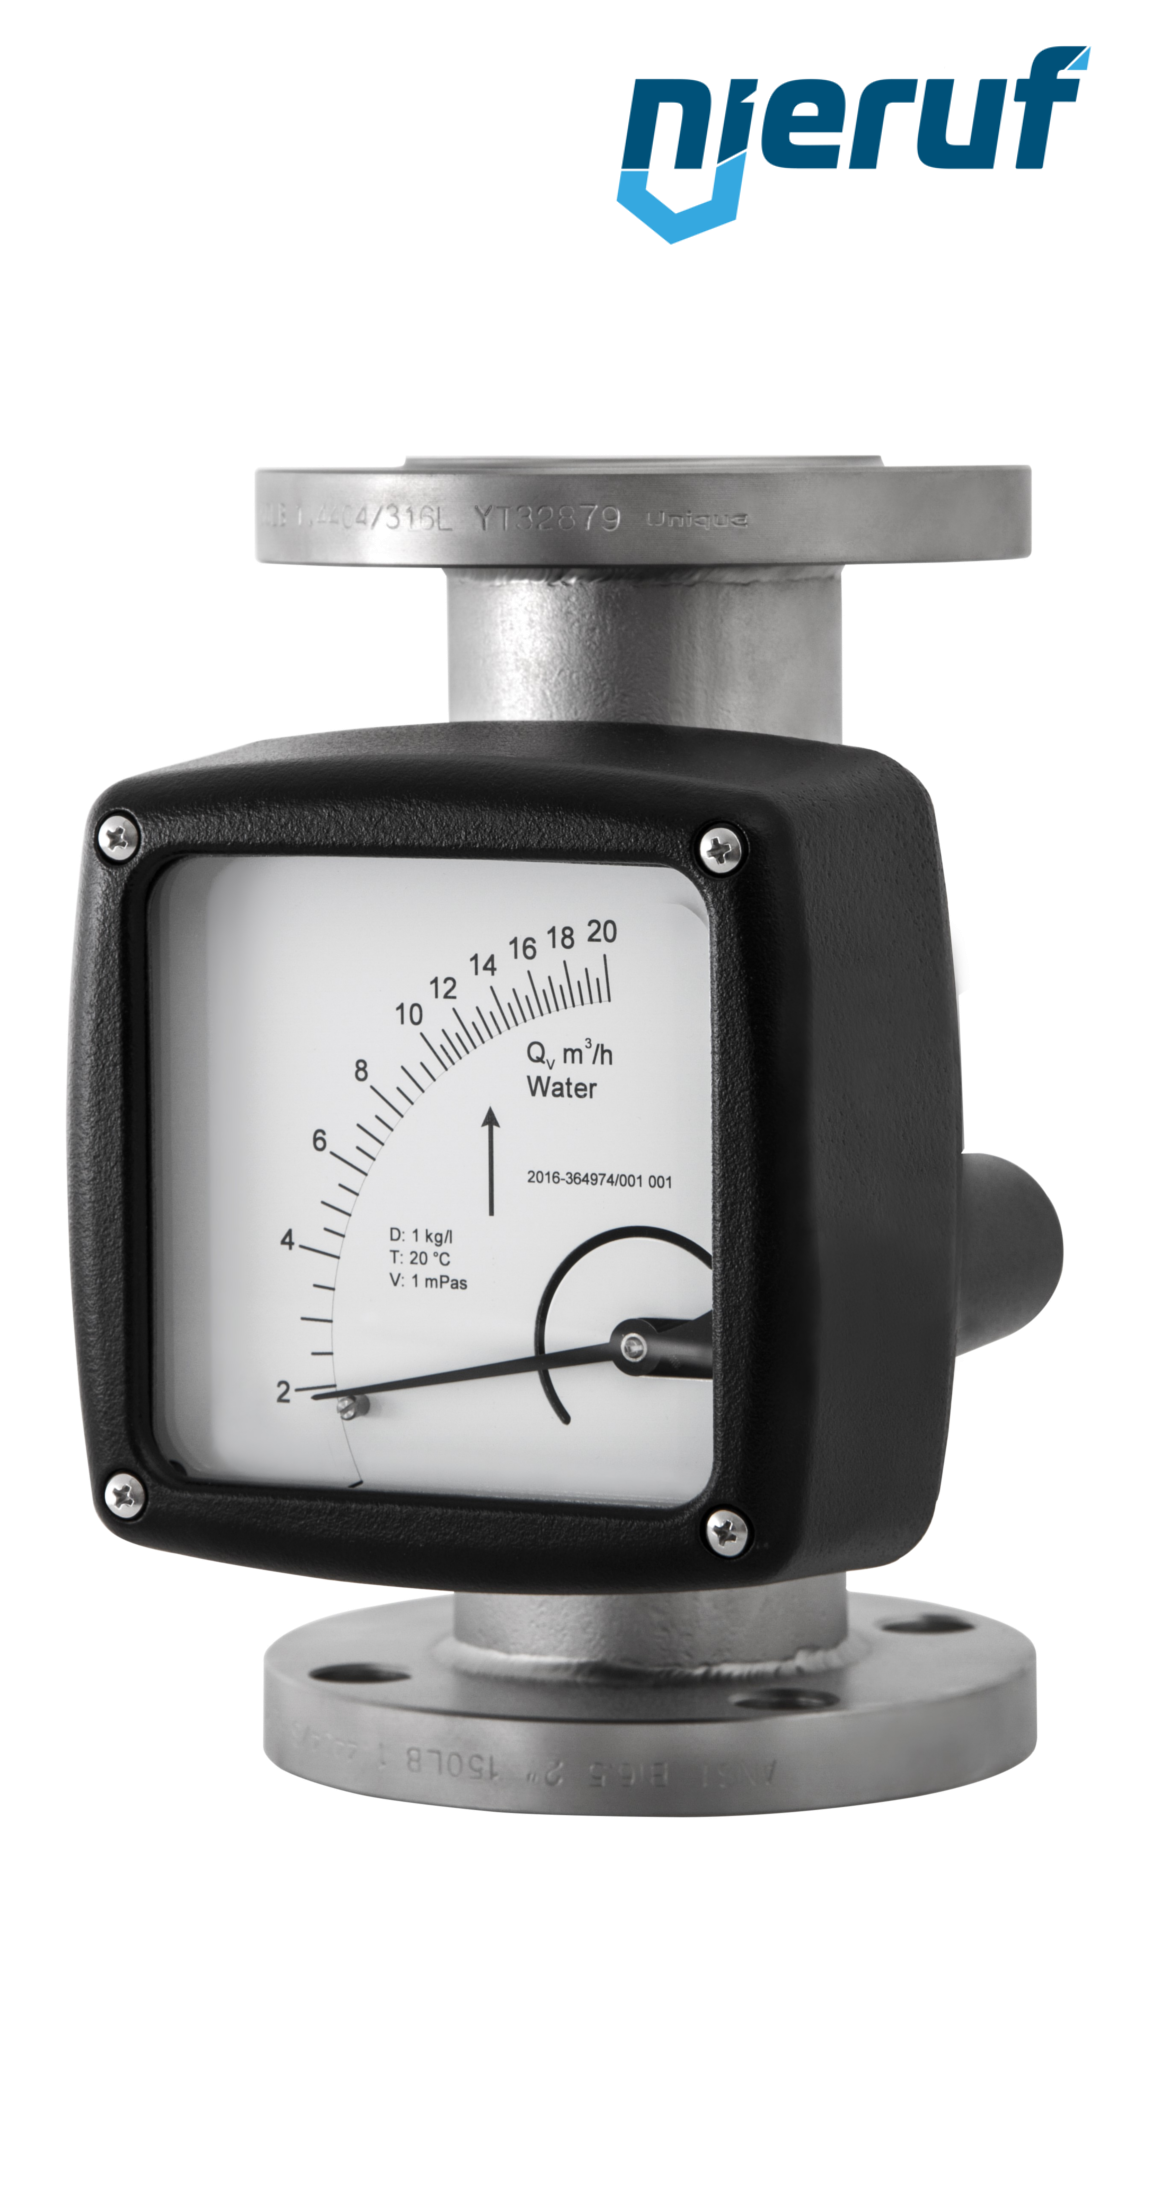 misuratore di portata / flussometro flangiato DN25-attacco 11,0 - 110,0 m3/h tubo DN25 aria